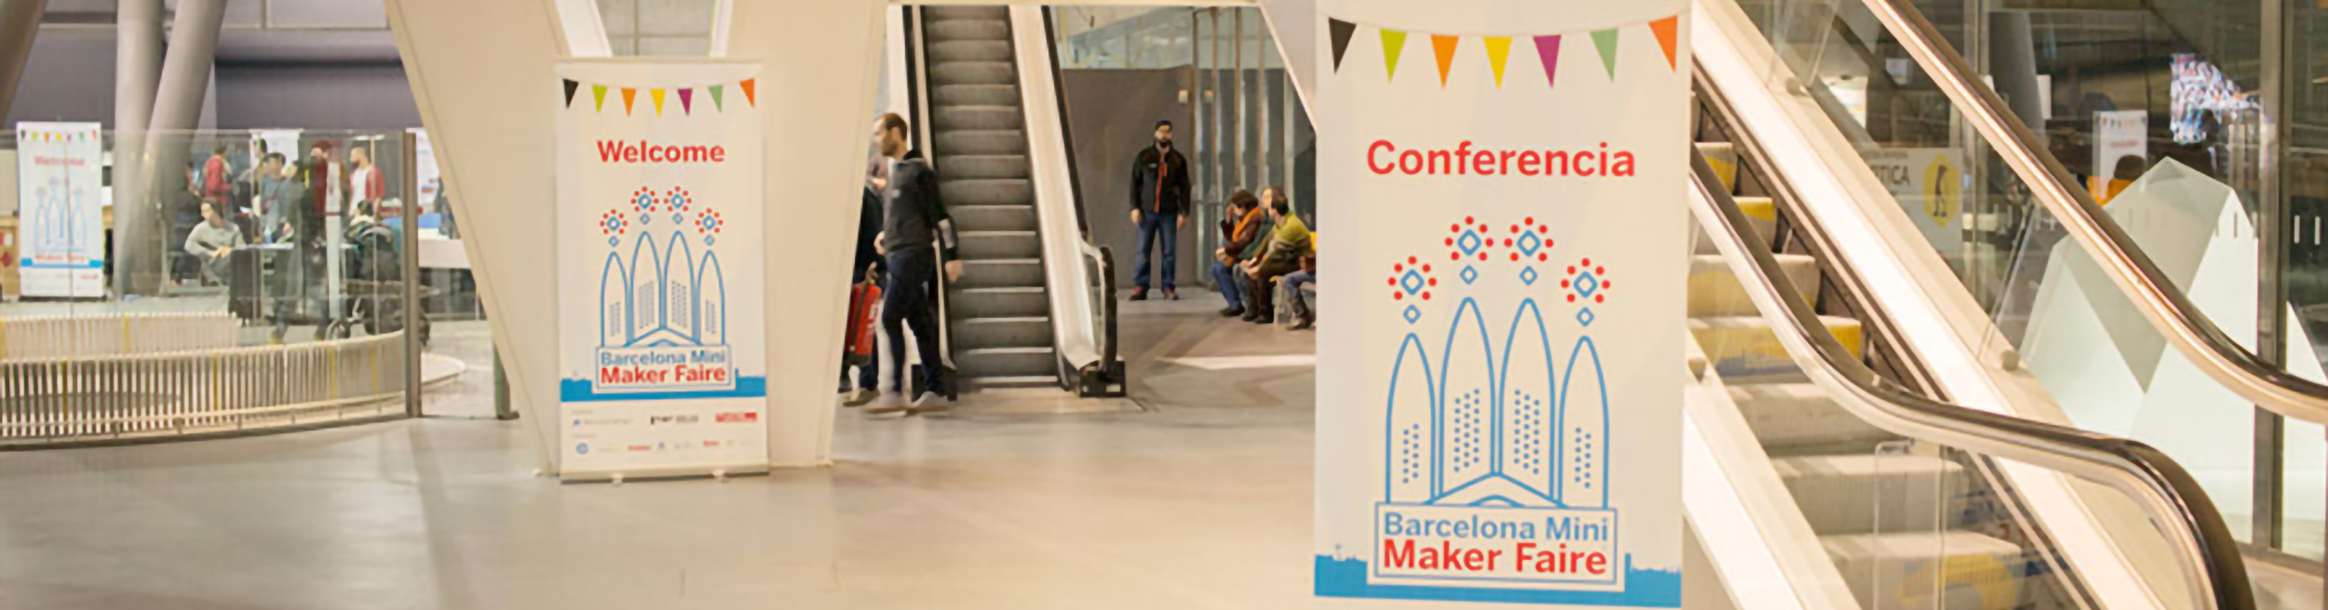 Mini Maker Faire Barcelona '16 project header image